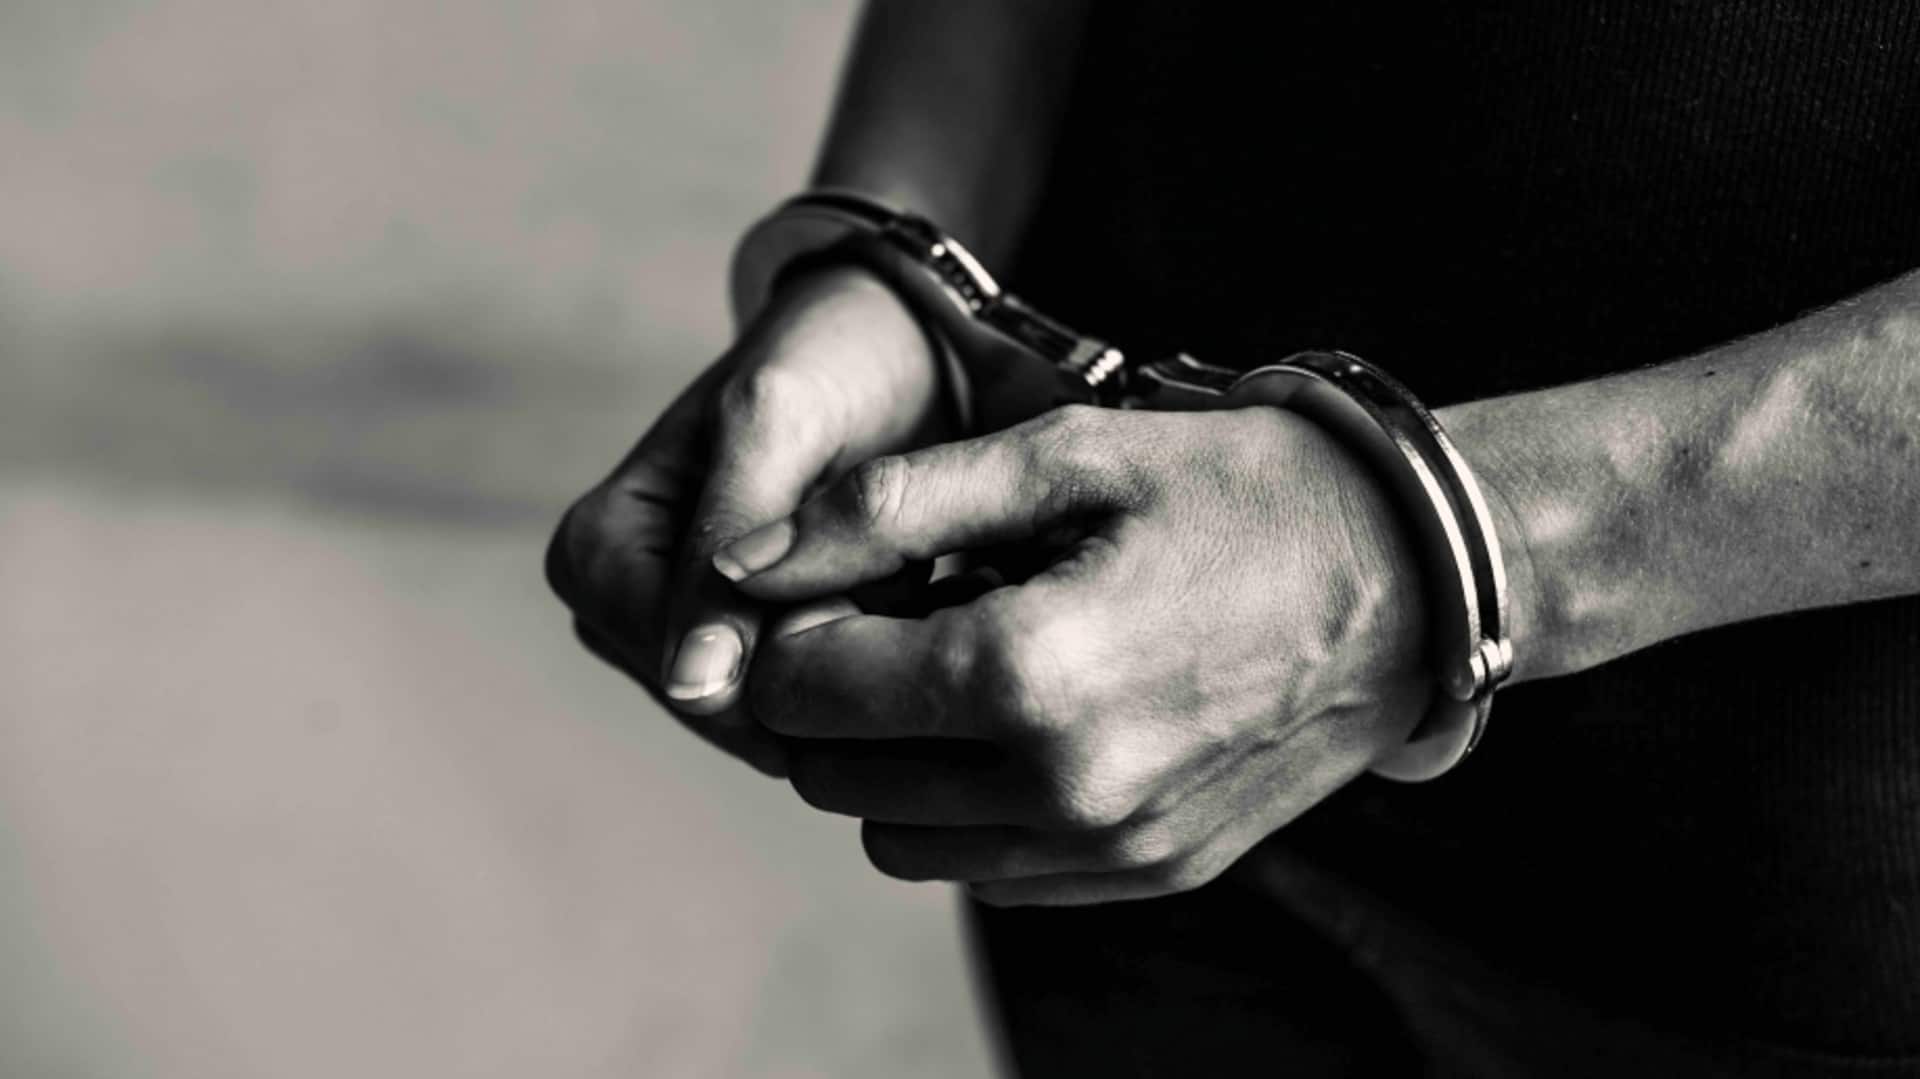 अमेरिका: भारतीय दंपति को हुई जेल, नाबालिग रिश्तेदार से जबरन पेट्रोल पंप-स्टोर में कराया था काम